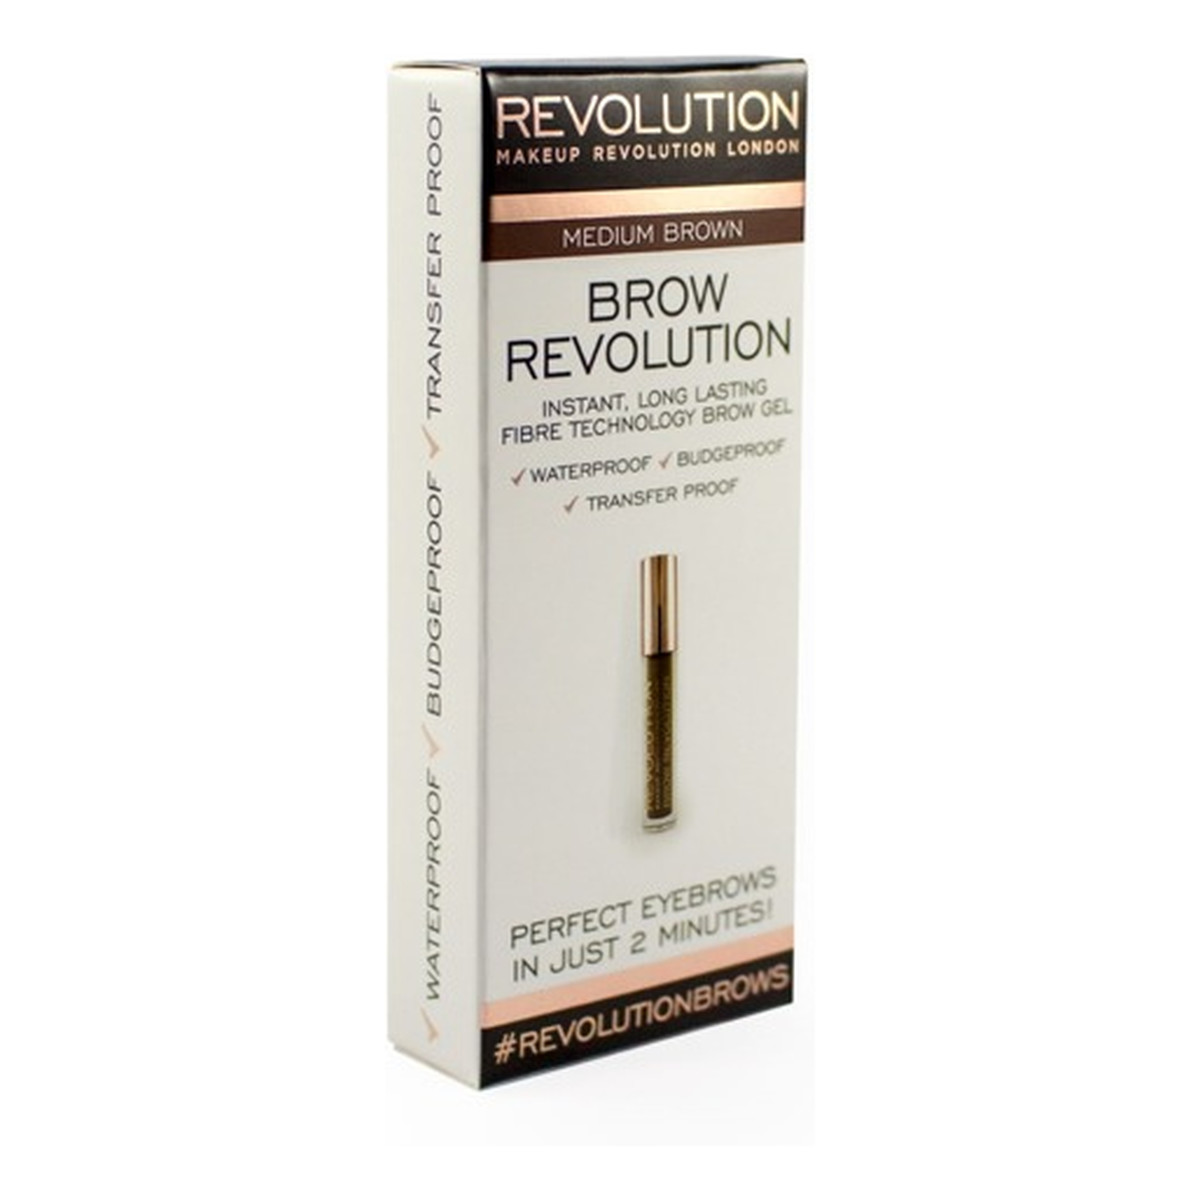 Makeup Revolution Brown Revolution żel do układania brwi 3g